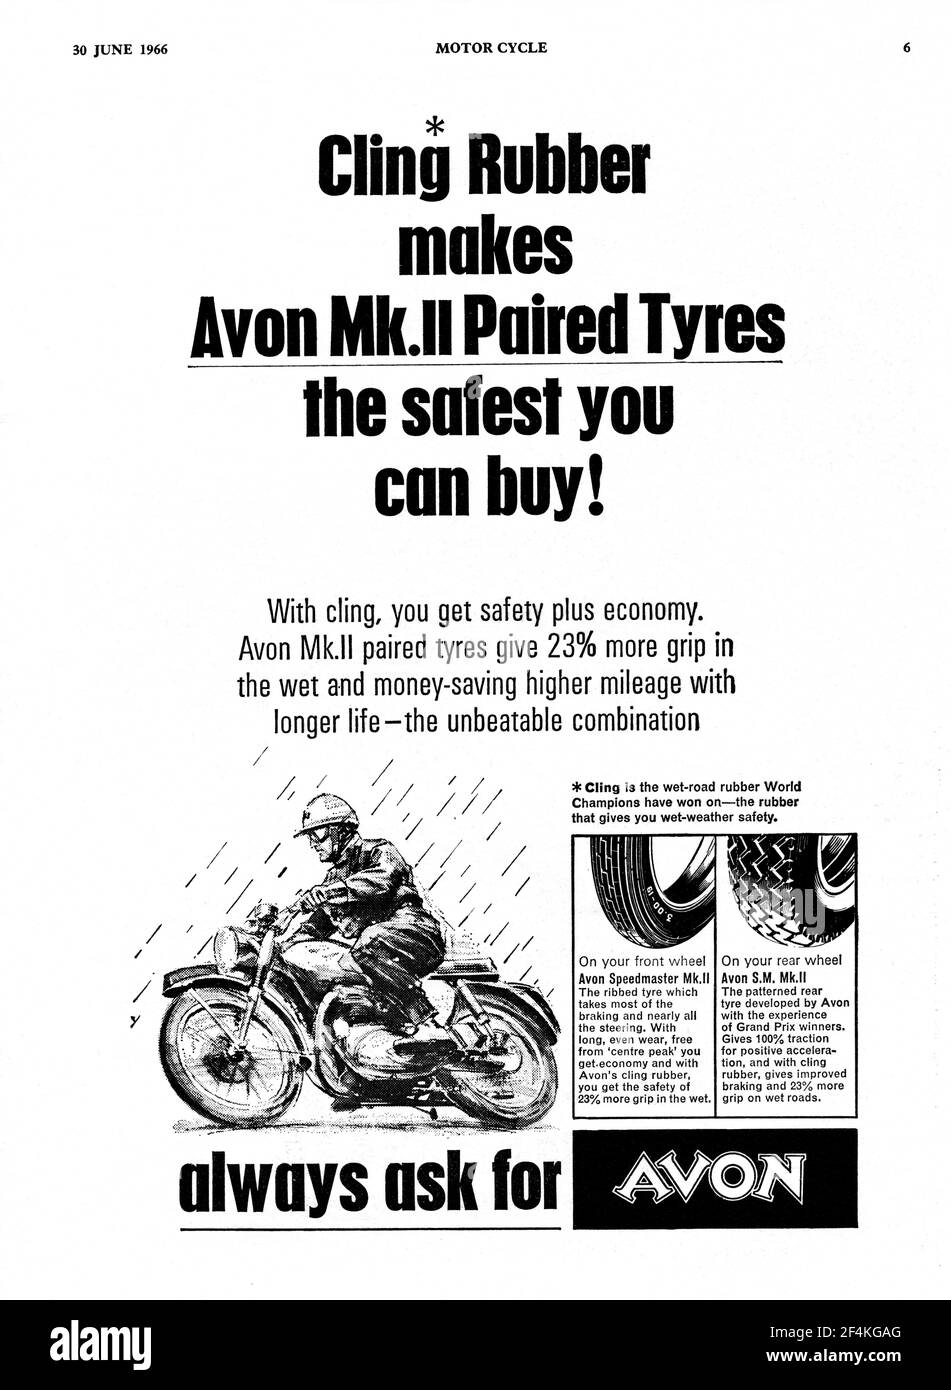 Un'inserzione di pneumatici vintage Avon della rivista Motor Cycle, giugno 1966 Foto Stock